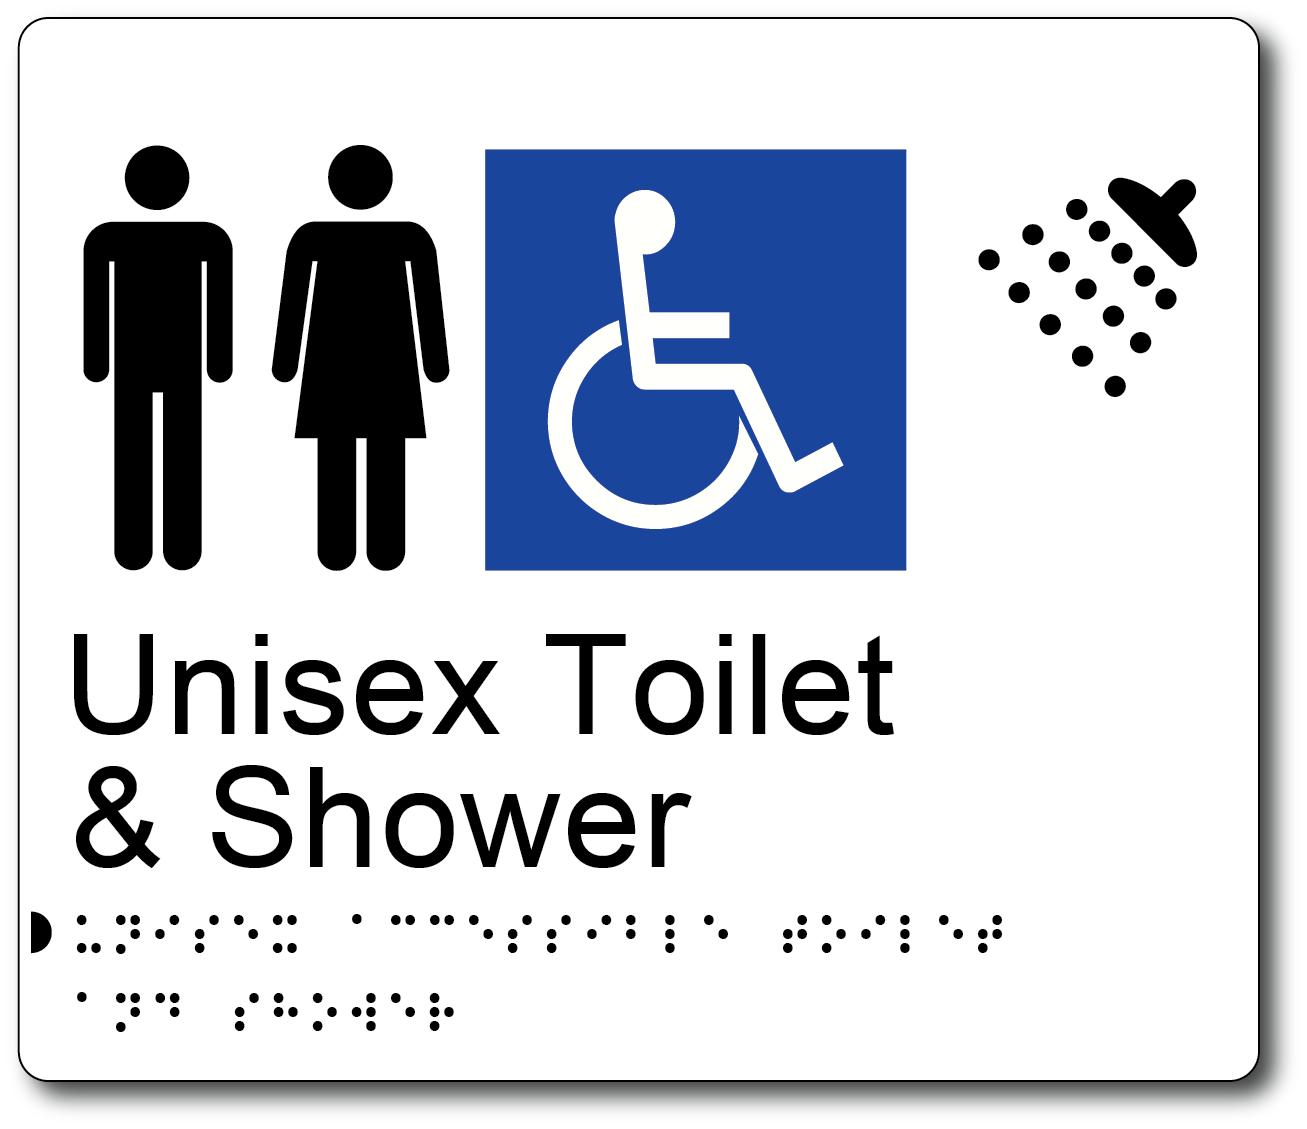 Unisex Toilet & Shower - Accessible